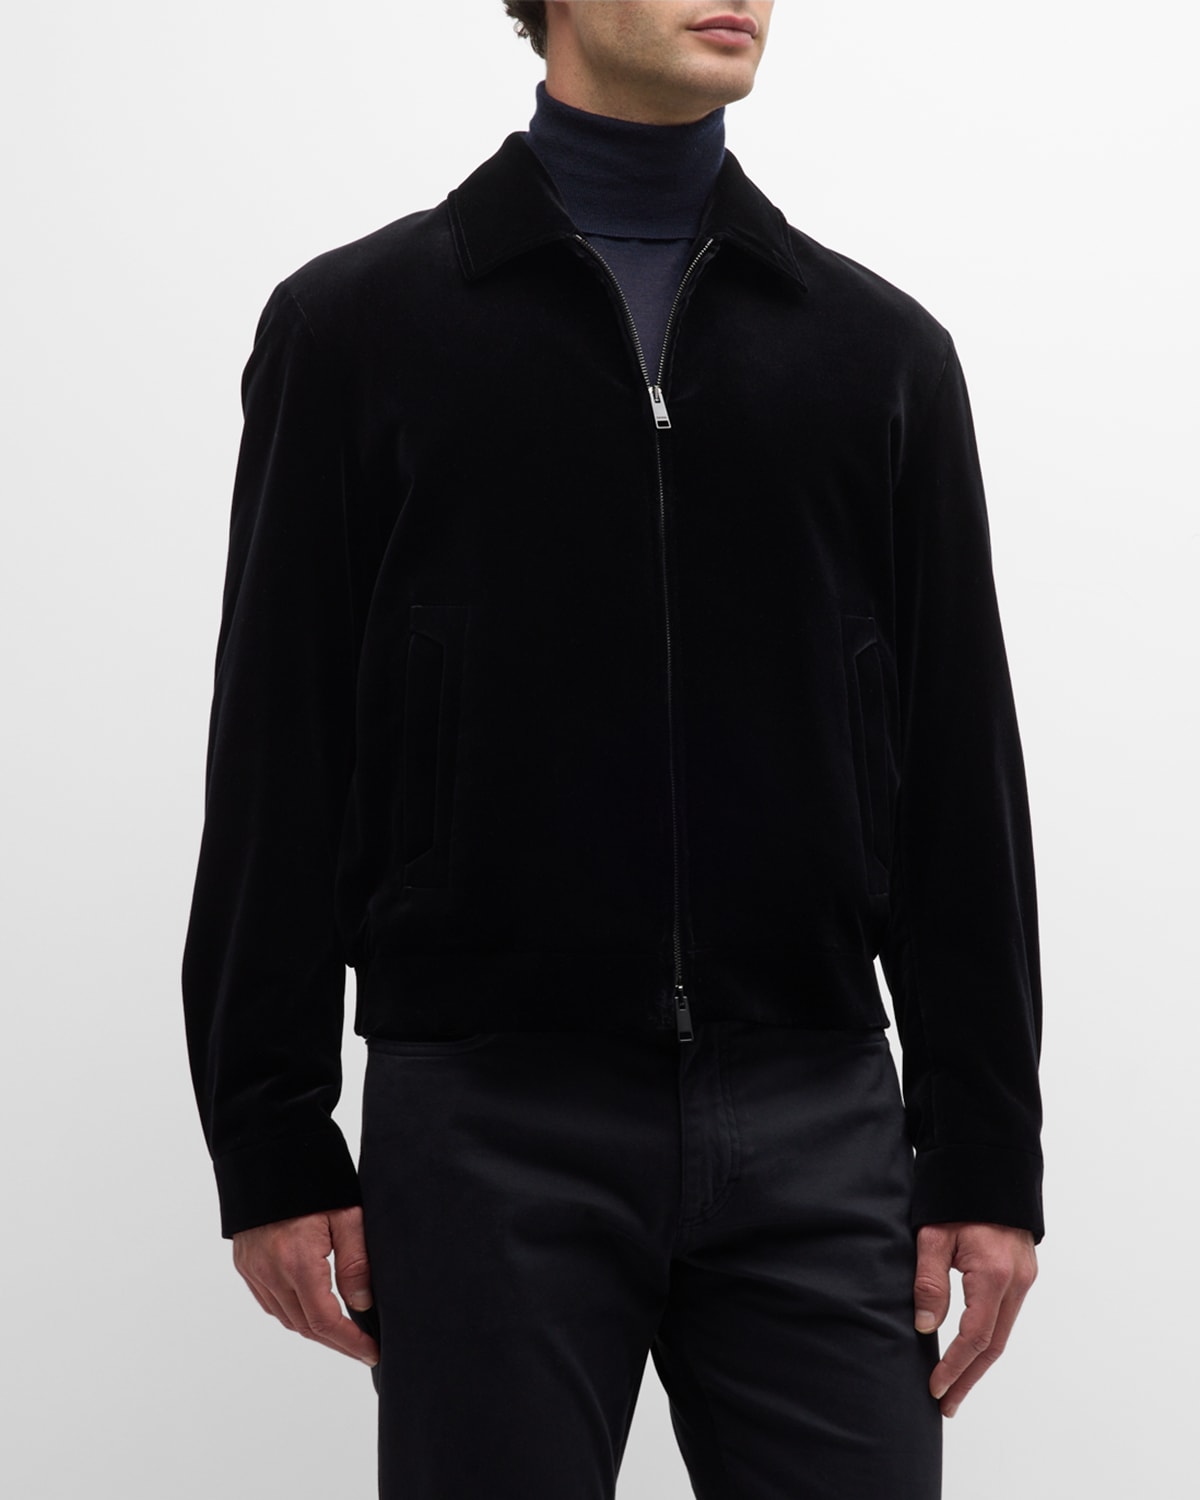 Zegna Men's Velvet Full-zip Bomber Jacket In Black Solid